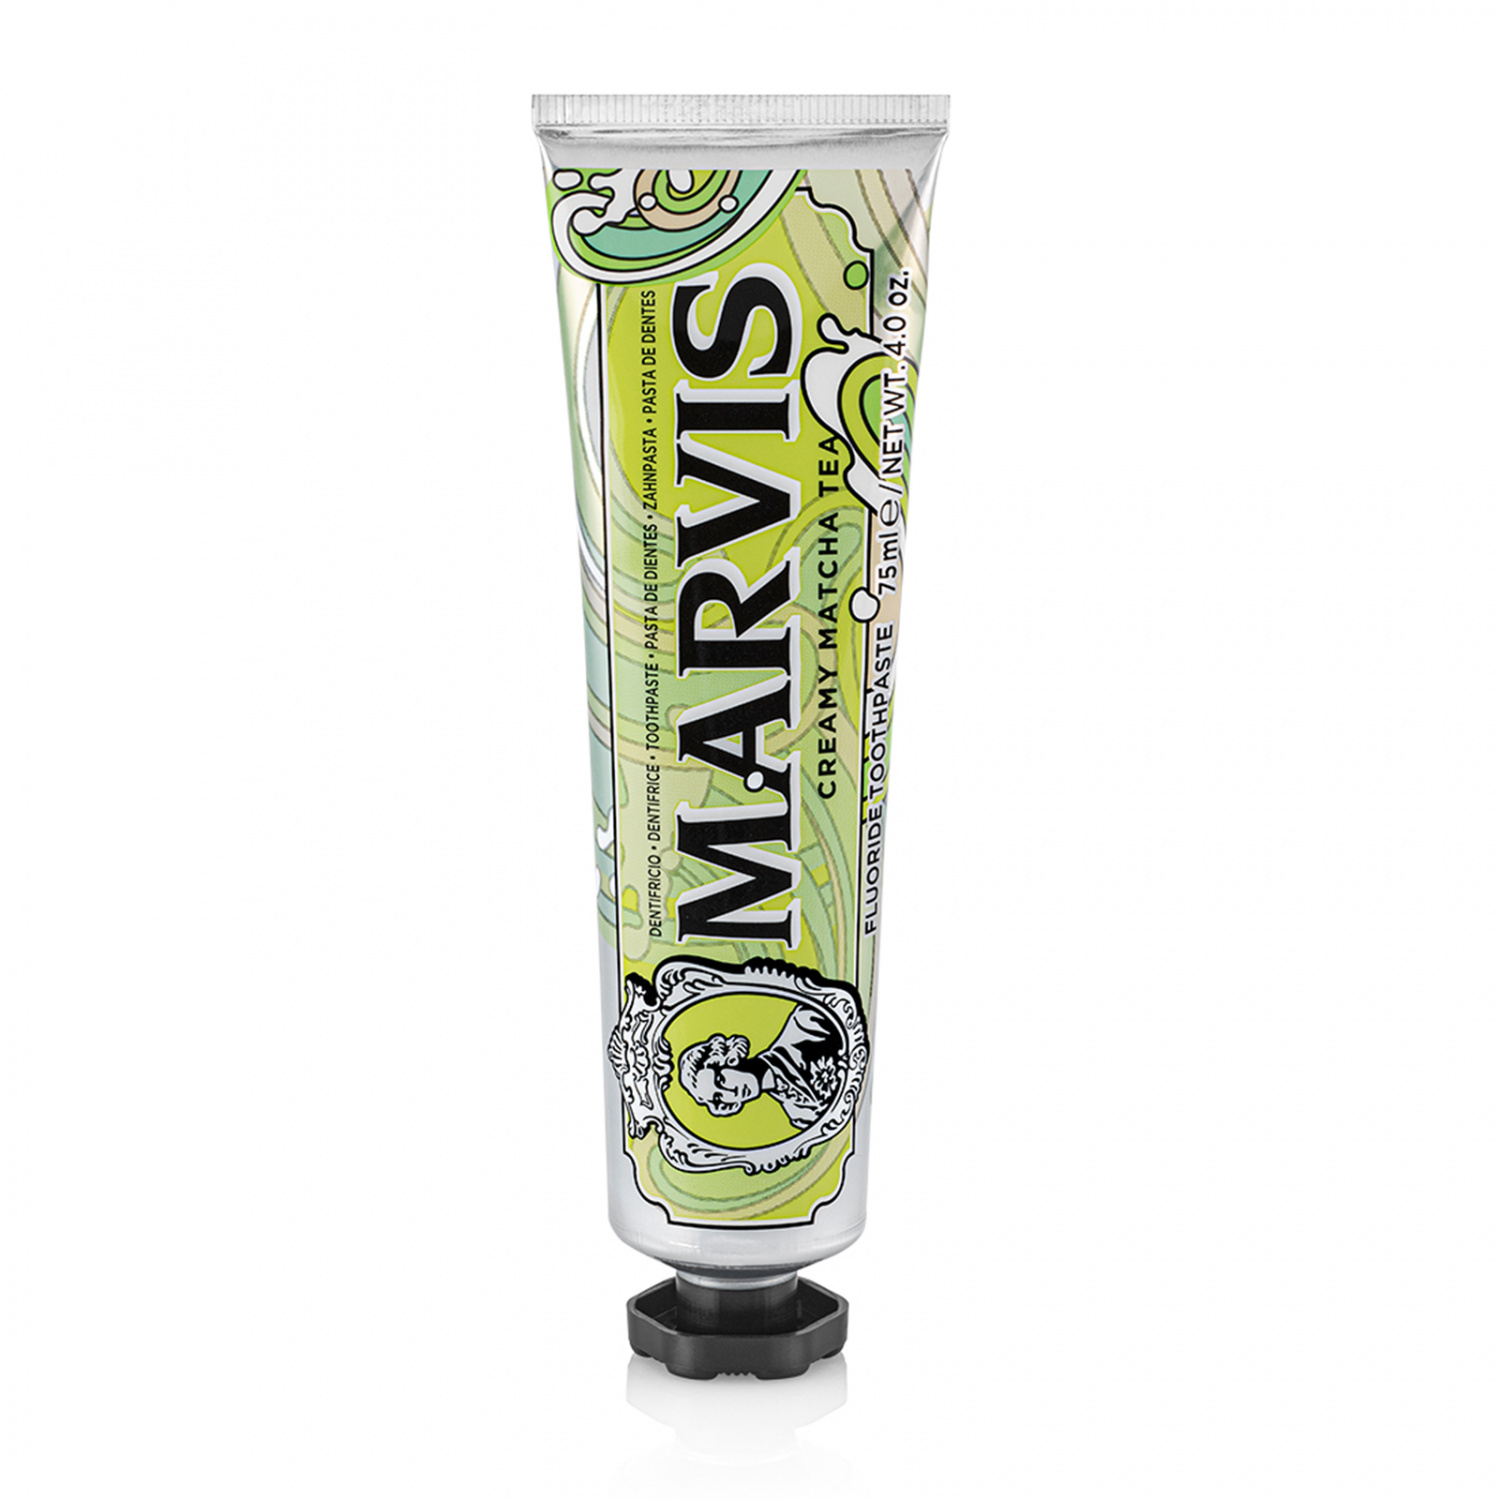 Marvis Creamy Matcha Tea 75ml - интернет-магазин профессиональной косметики Spadream, изображение 37618